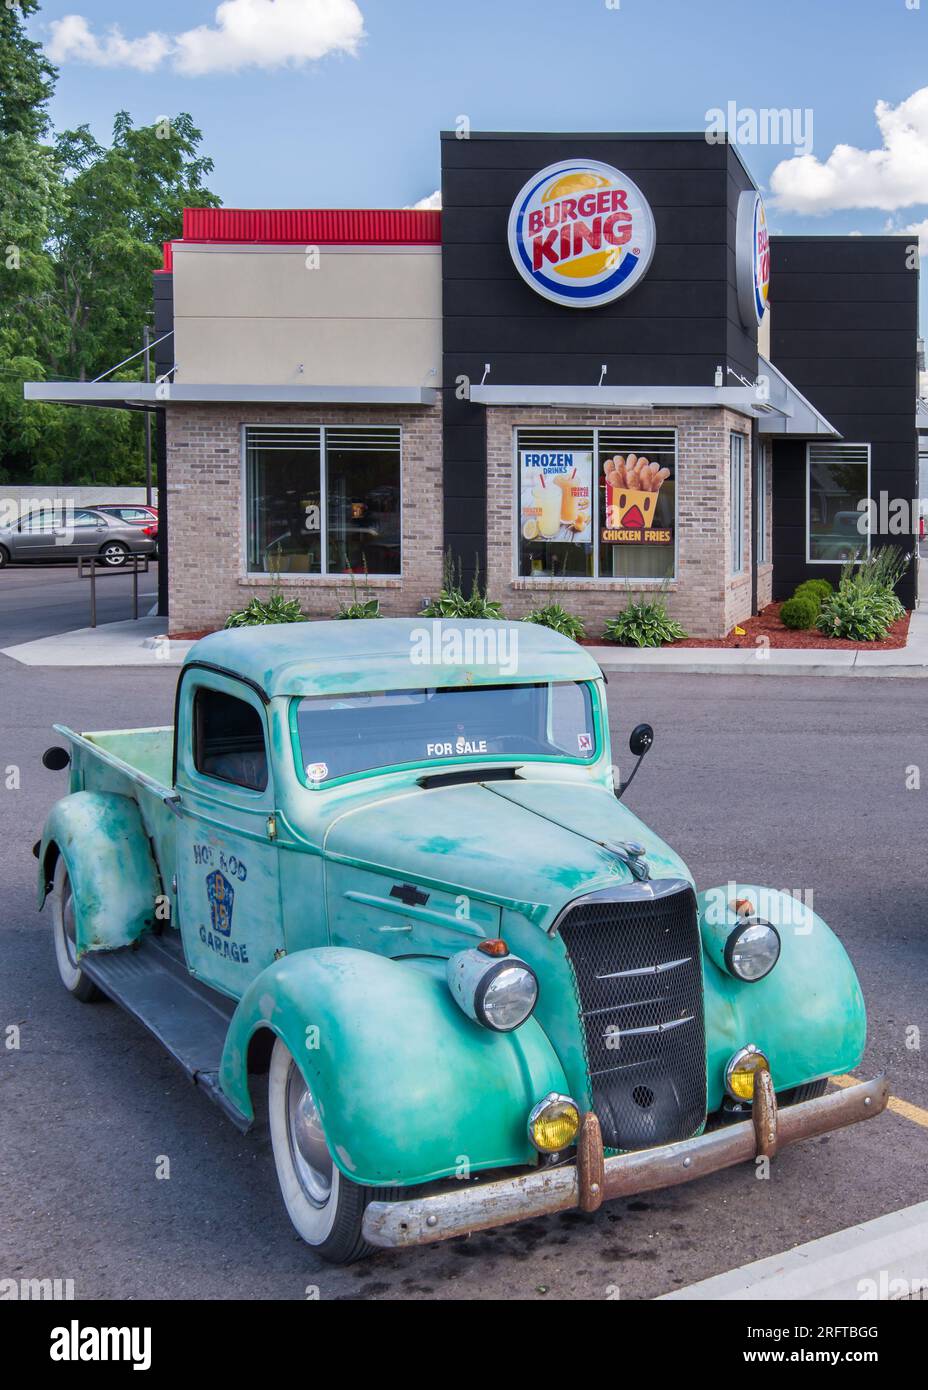 ROYAL OAK, MI/USA - 12 DE AGOSTO de 2015: Un camión Chevrolet de 1937 en un restaurante Burger King en el Woodward Dream Cruise. Foto de stock